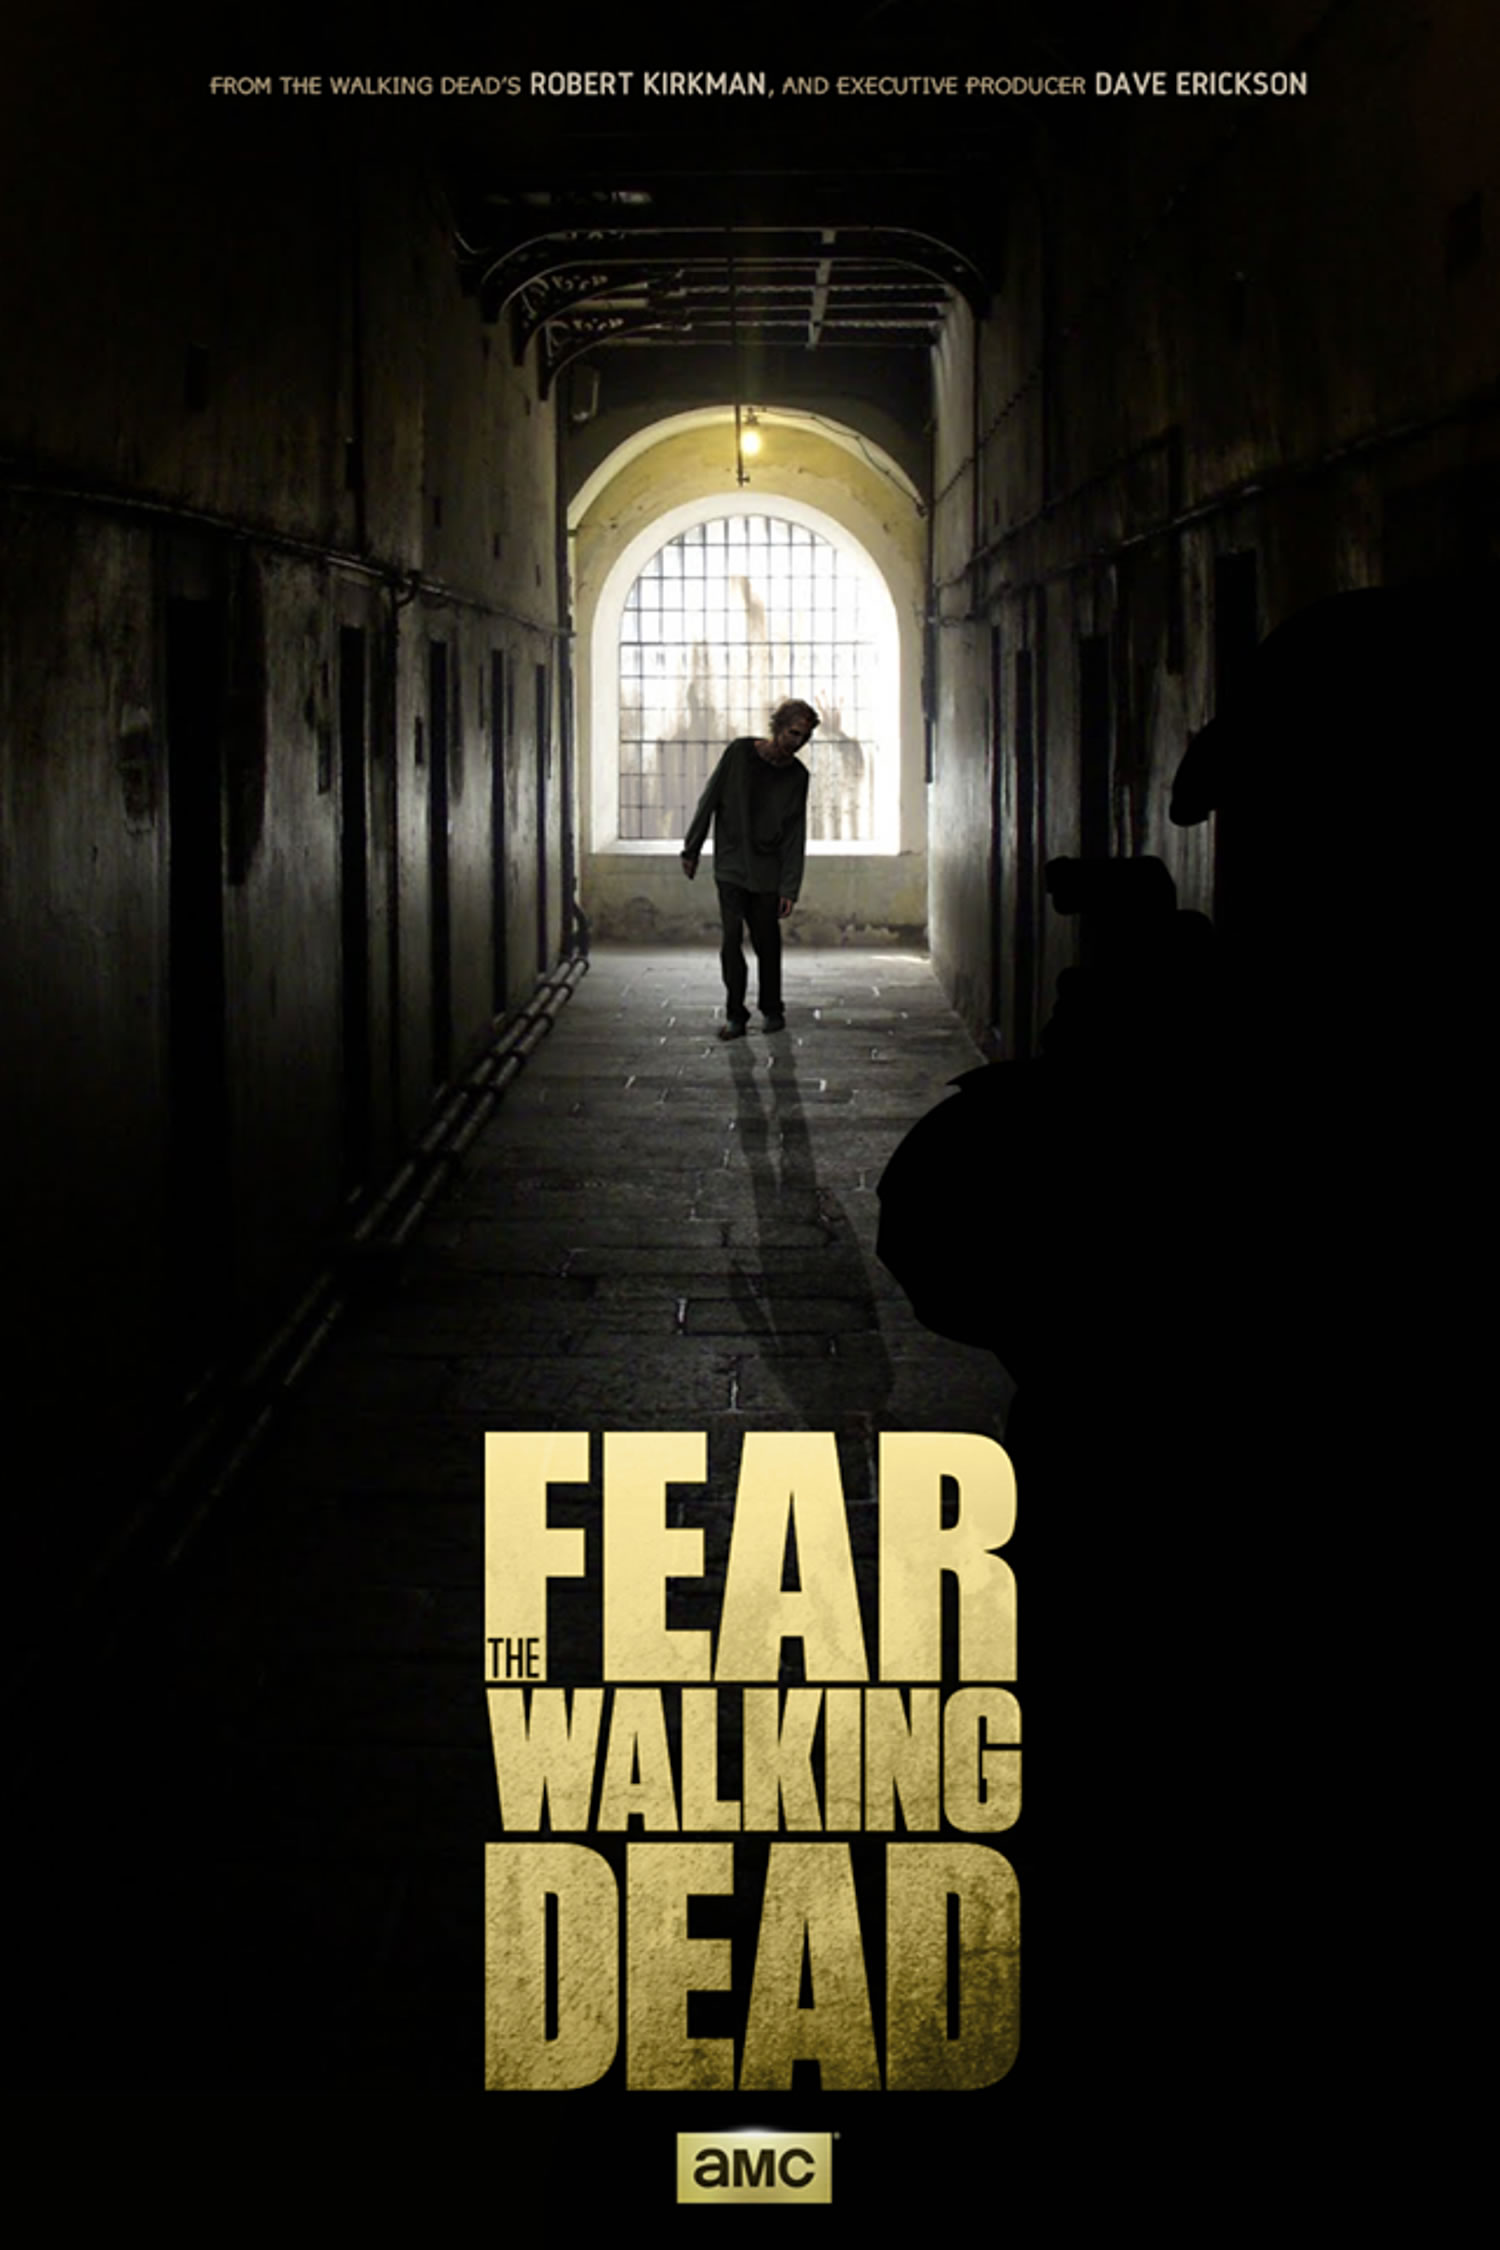 Walking Dead Iphone Wallpapers - Fear The Walking Dead Serie - HD Wallpaper 